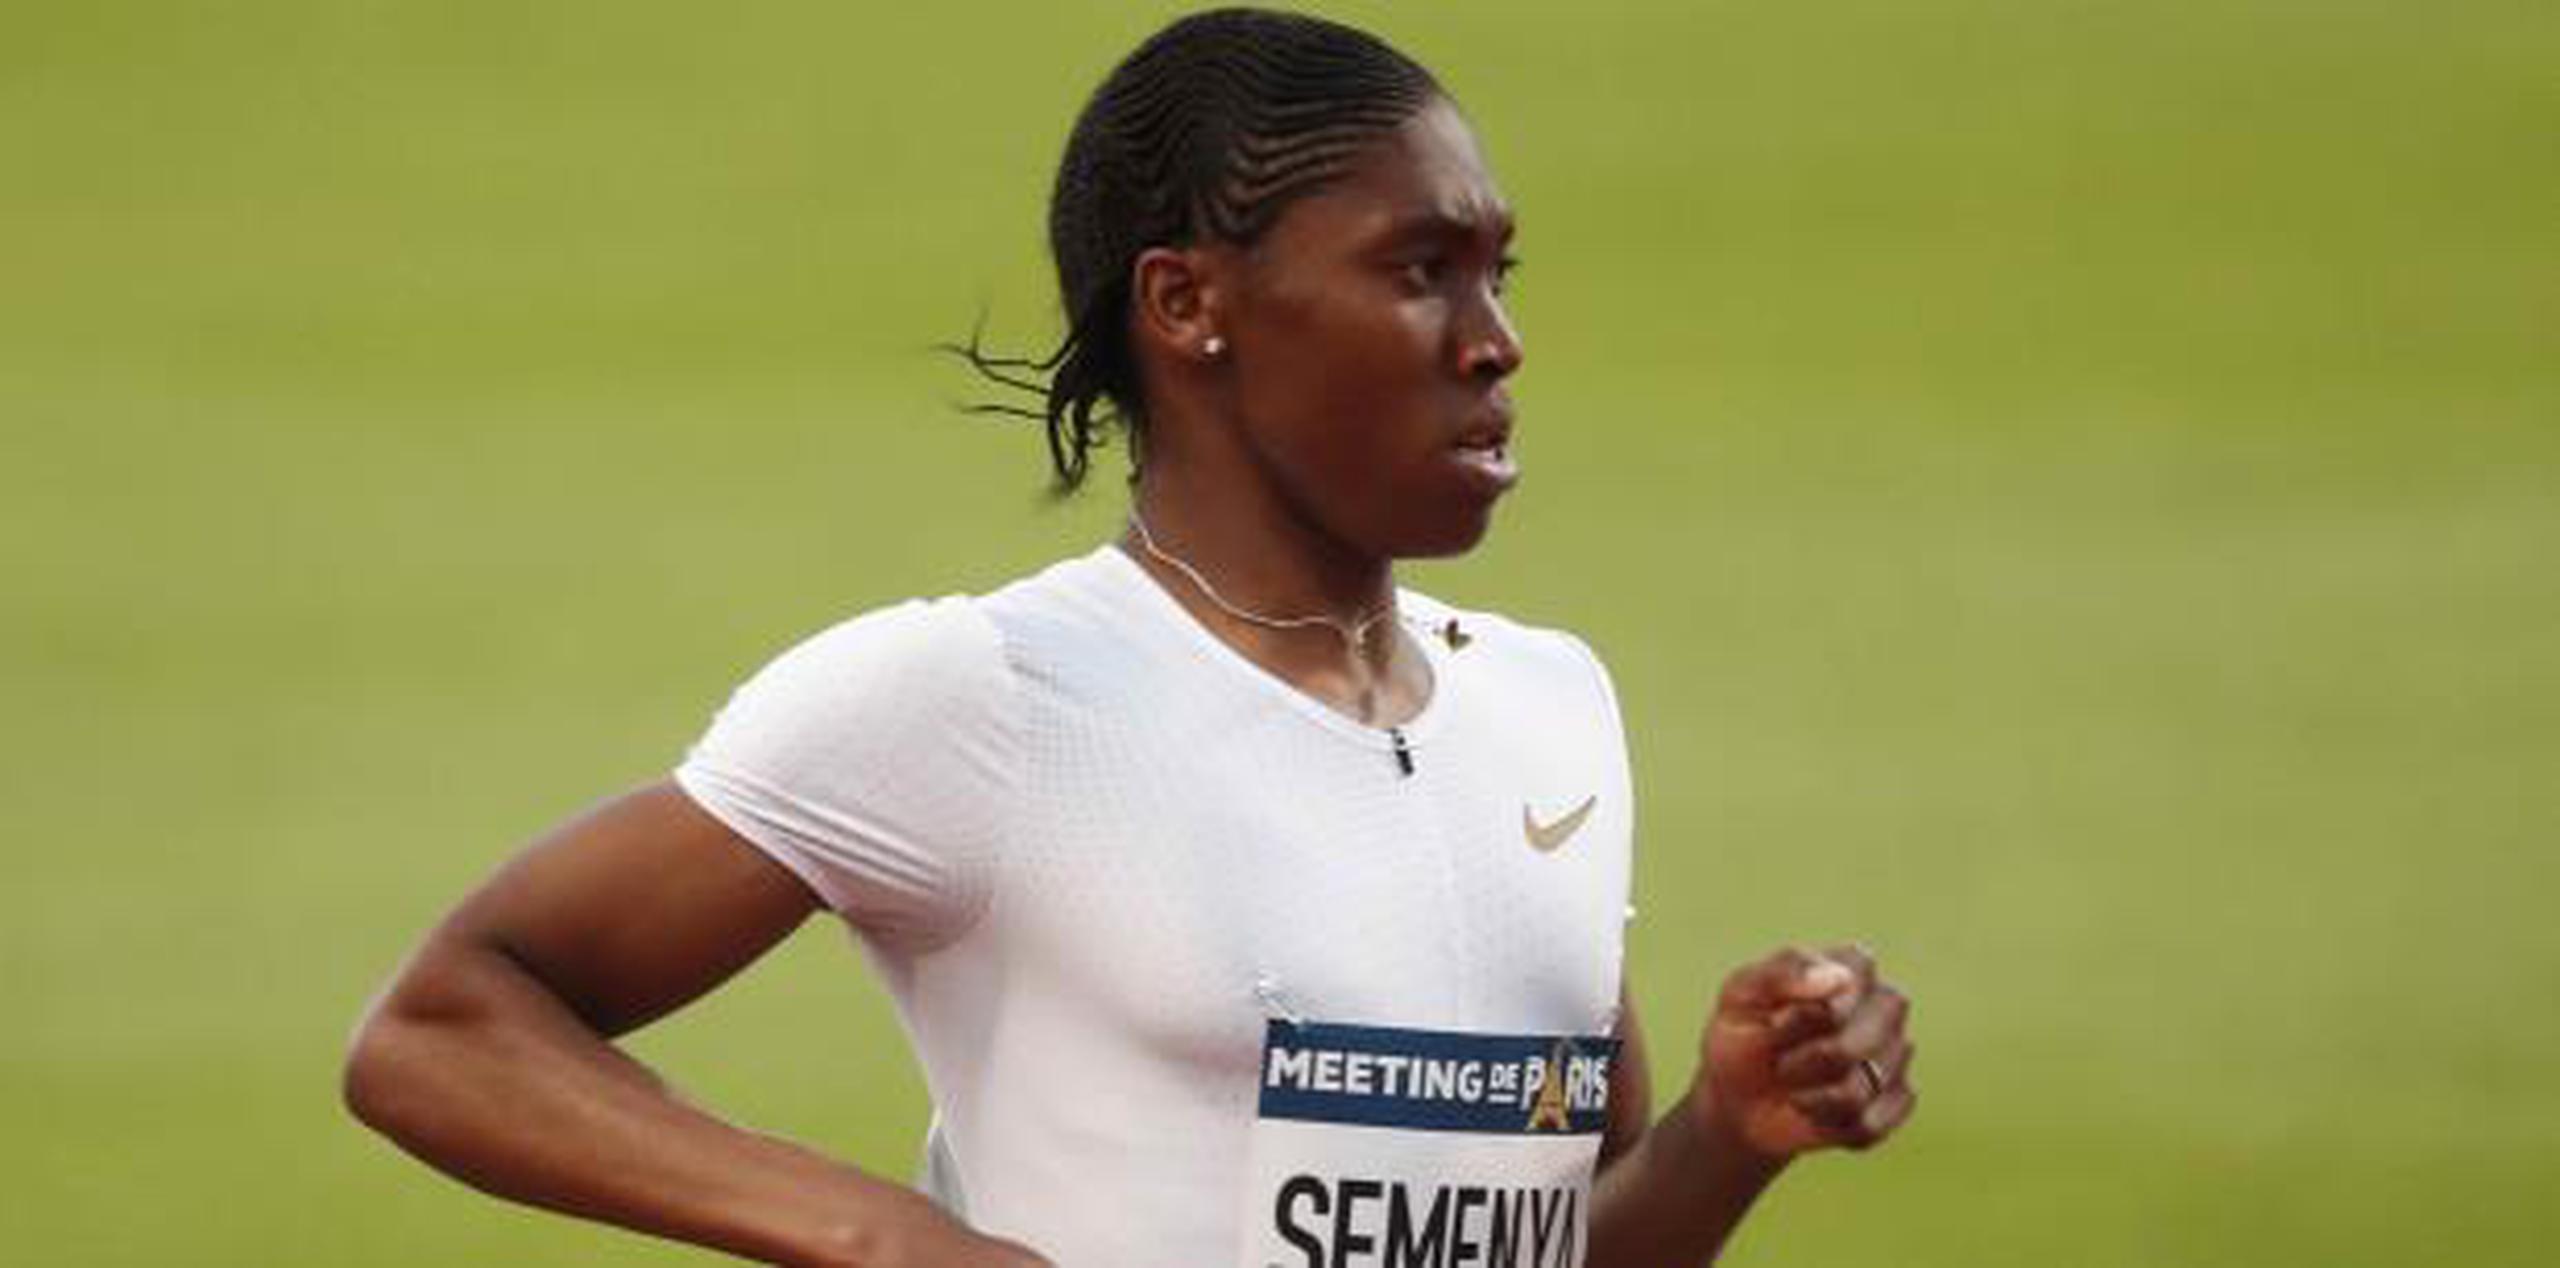 La atleta sudafricana Caster Semenya estará presente desde este lunes en Suiza para las vistas donde se discutirán sus niveles de testosterona. (AP)